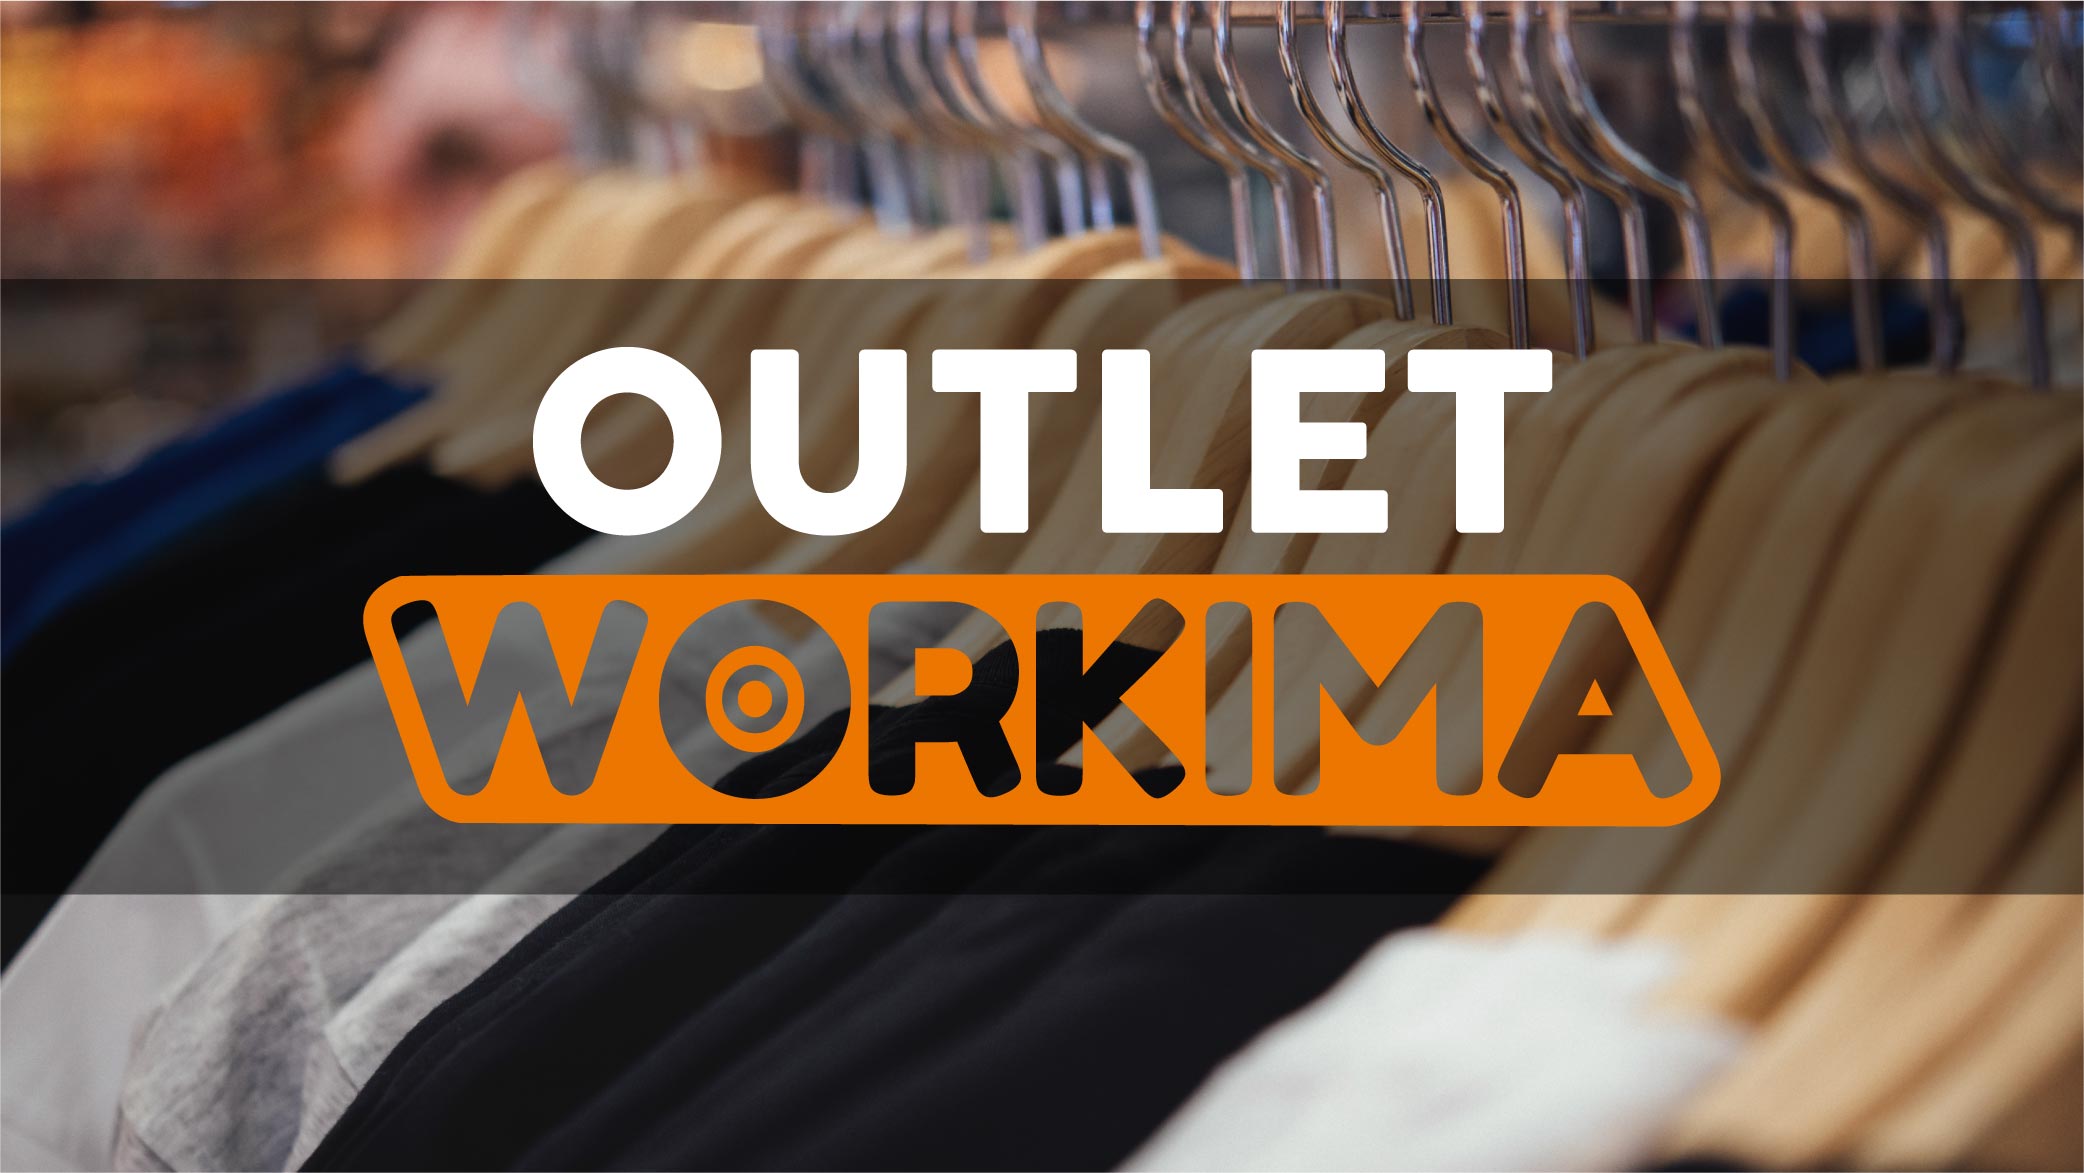 Workima OUTLET. ropa de trabajo al mejor precio. Chollos y ofertas. Descuentos